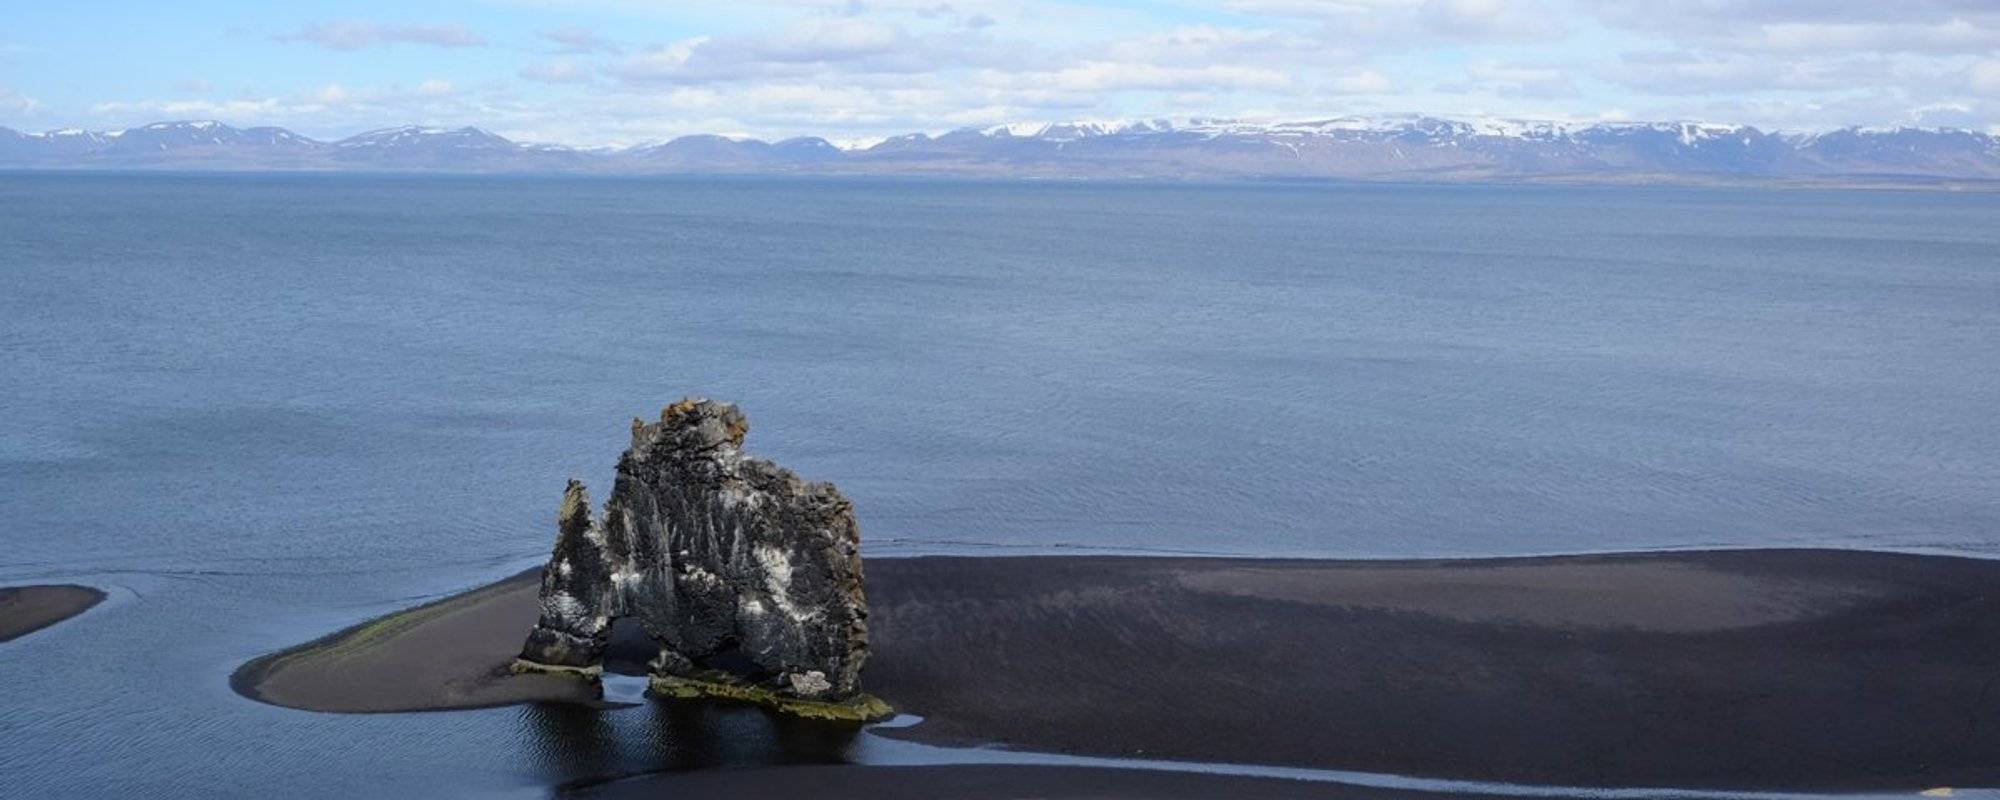 Þjóðvegur 1. Hitchhiking Around Iceland – Part V